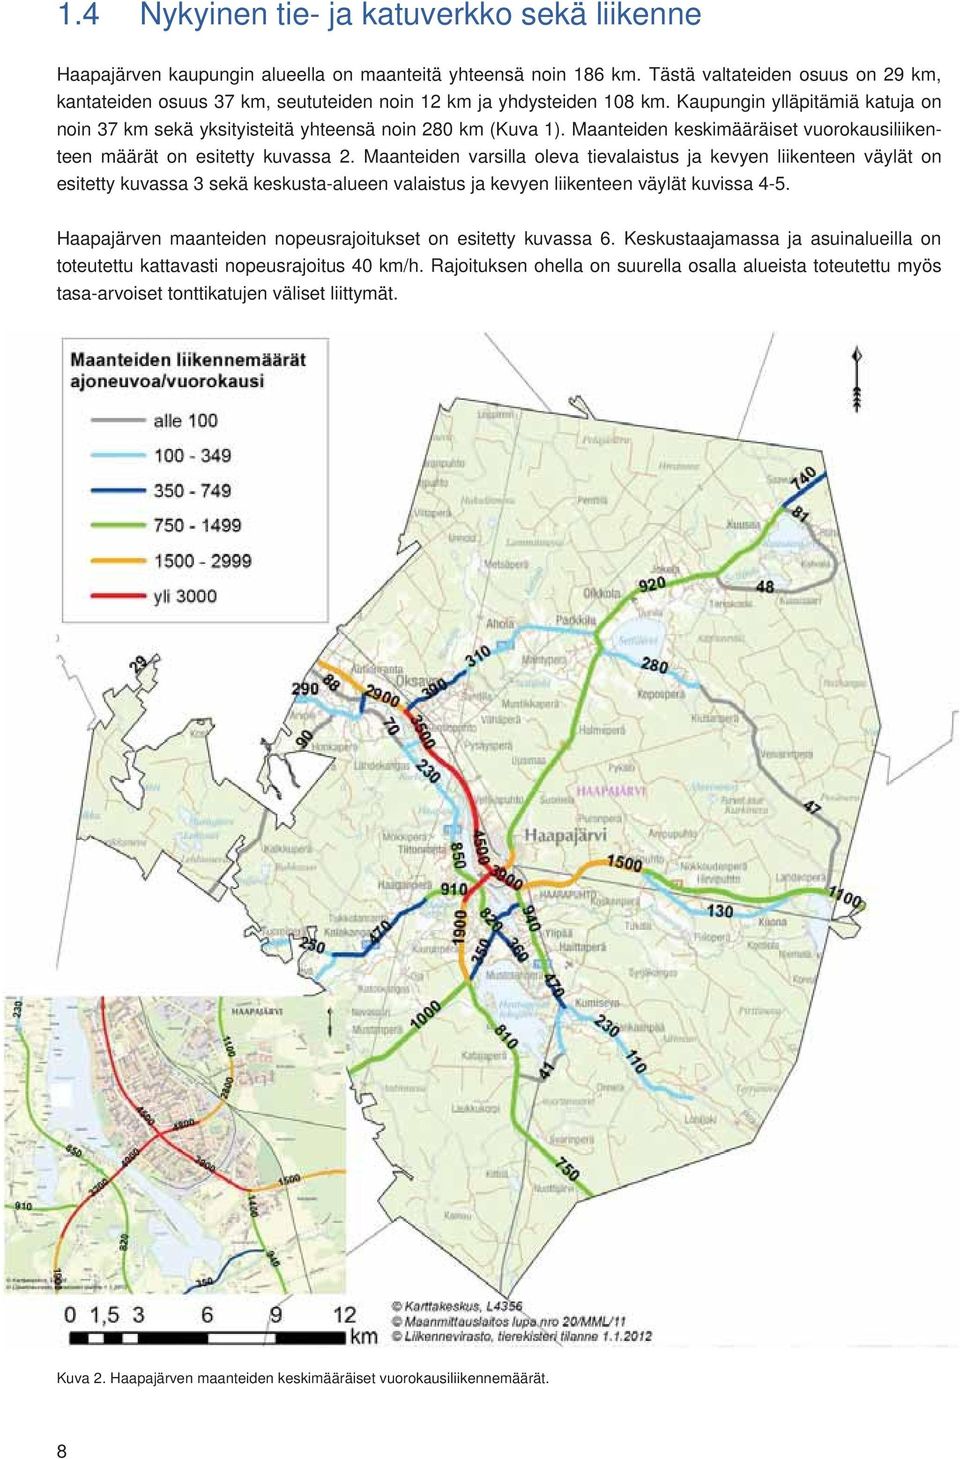 Maanteiden keskimääräiset vuorokausiliikenteen määrät on esitetty kuvassa 2.